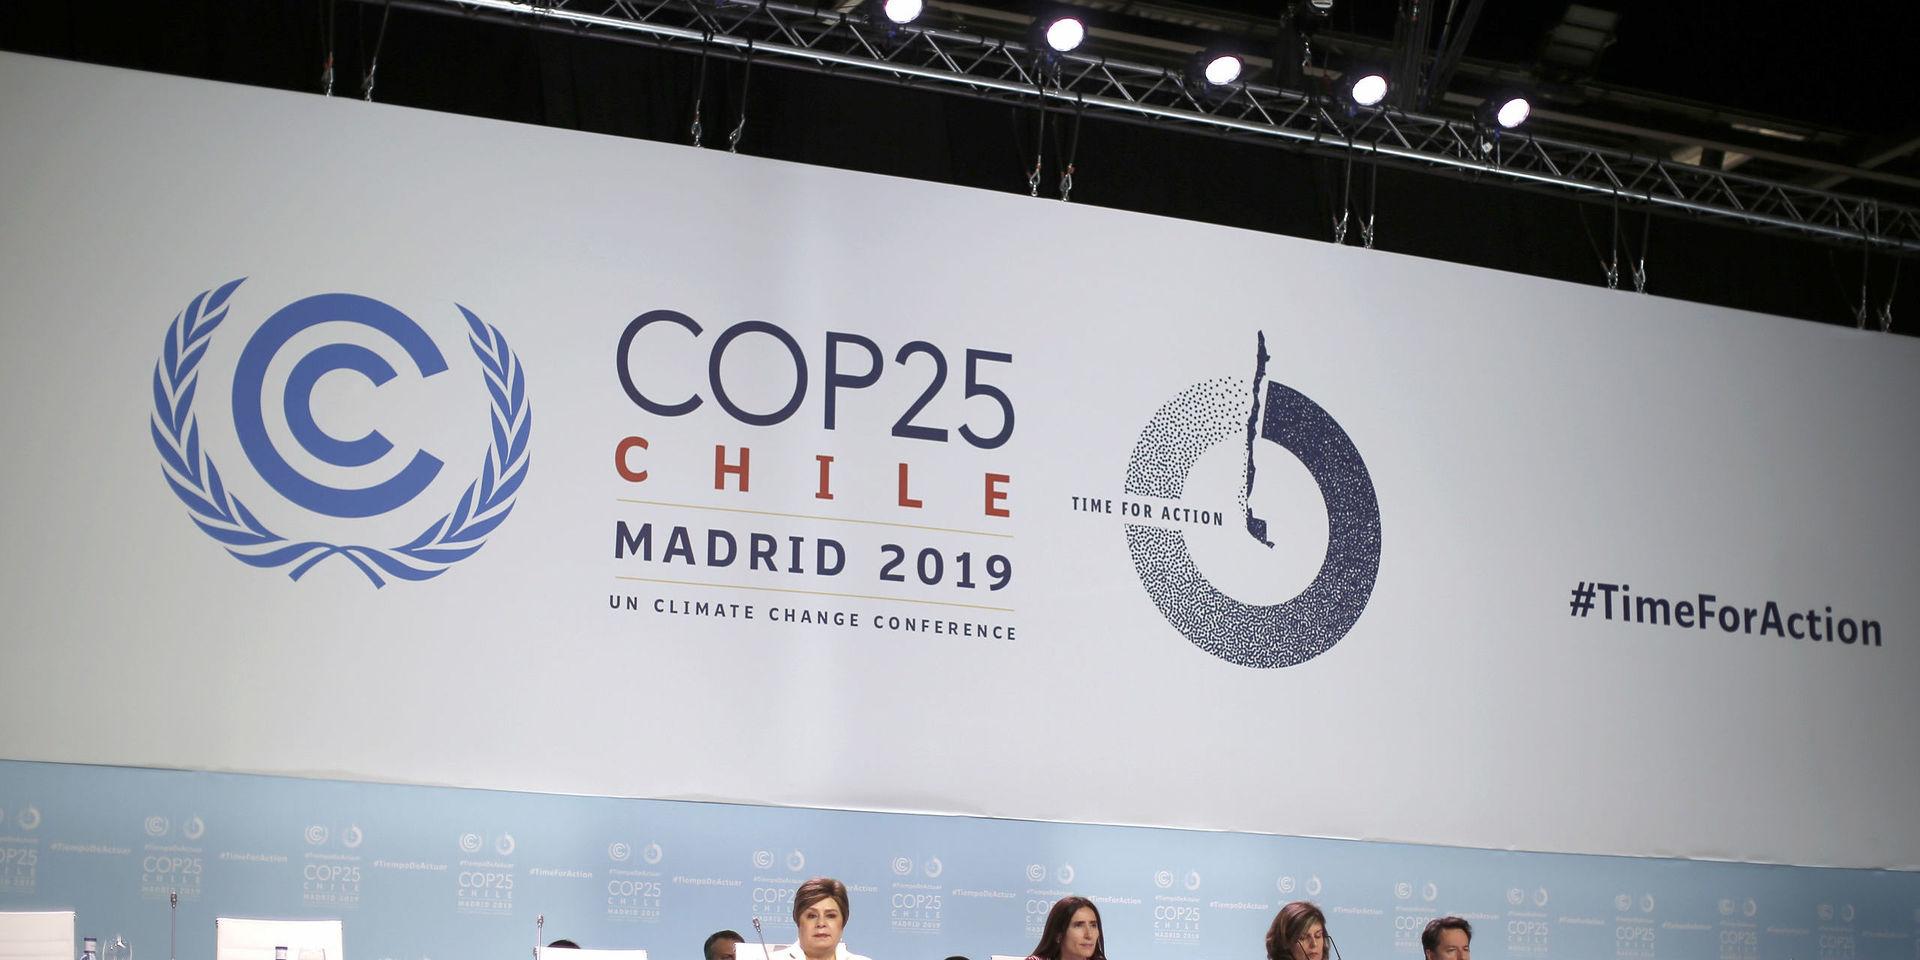 Chiles miljöminister Carolina Schmidt – ordförande för FN:s klimatmöte i Madrid – vädjade till alla parter att göra ett sista försök att komma överens.